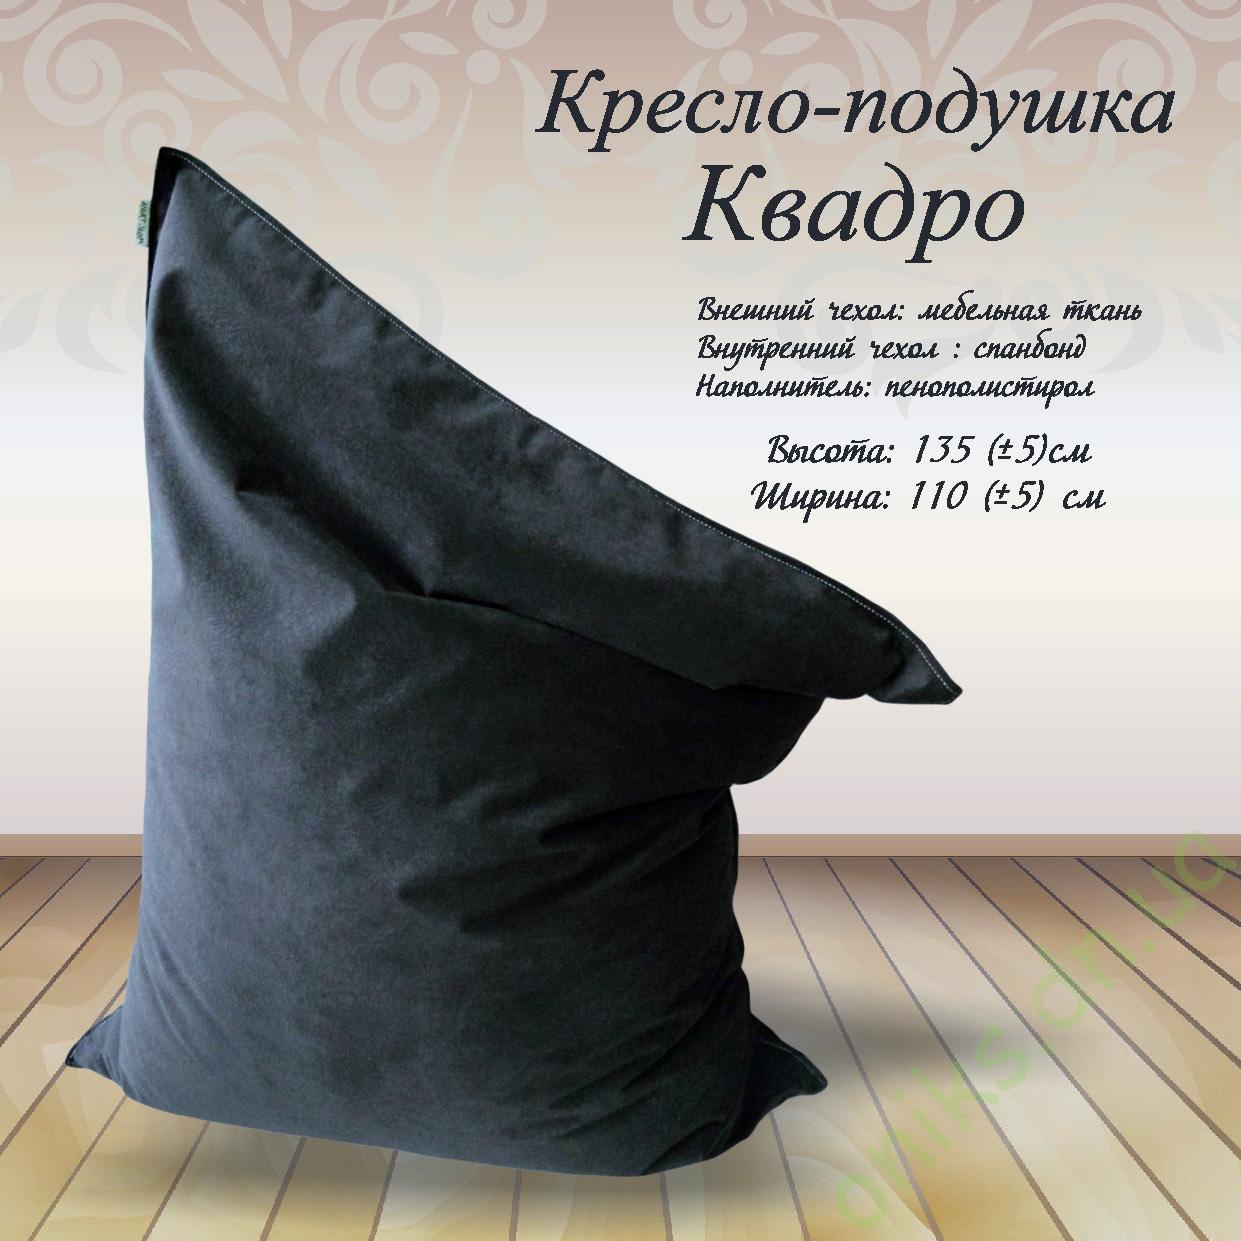 Купить Кресло-подушку Квадро в Донецке